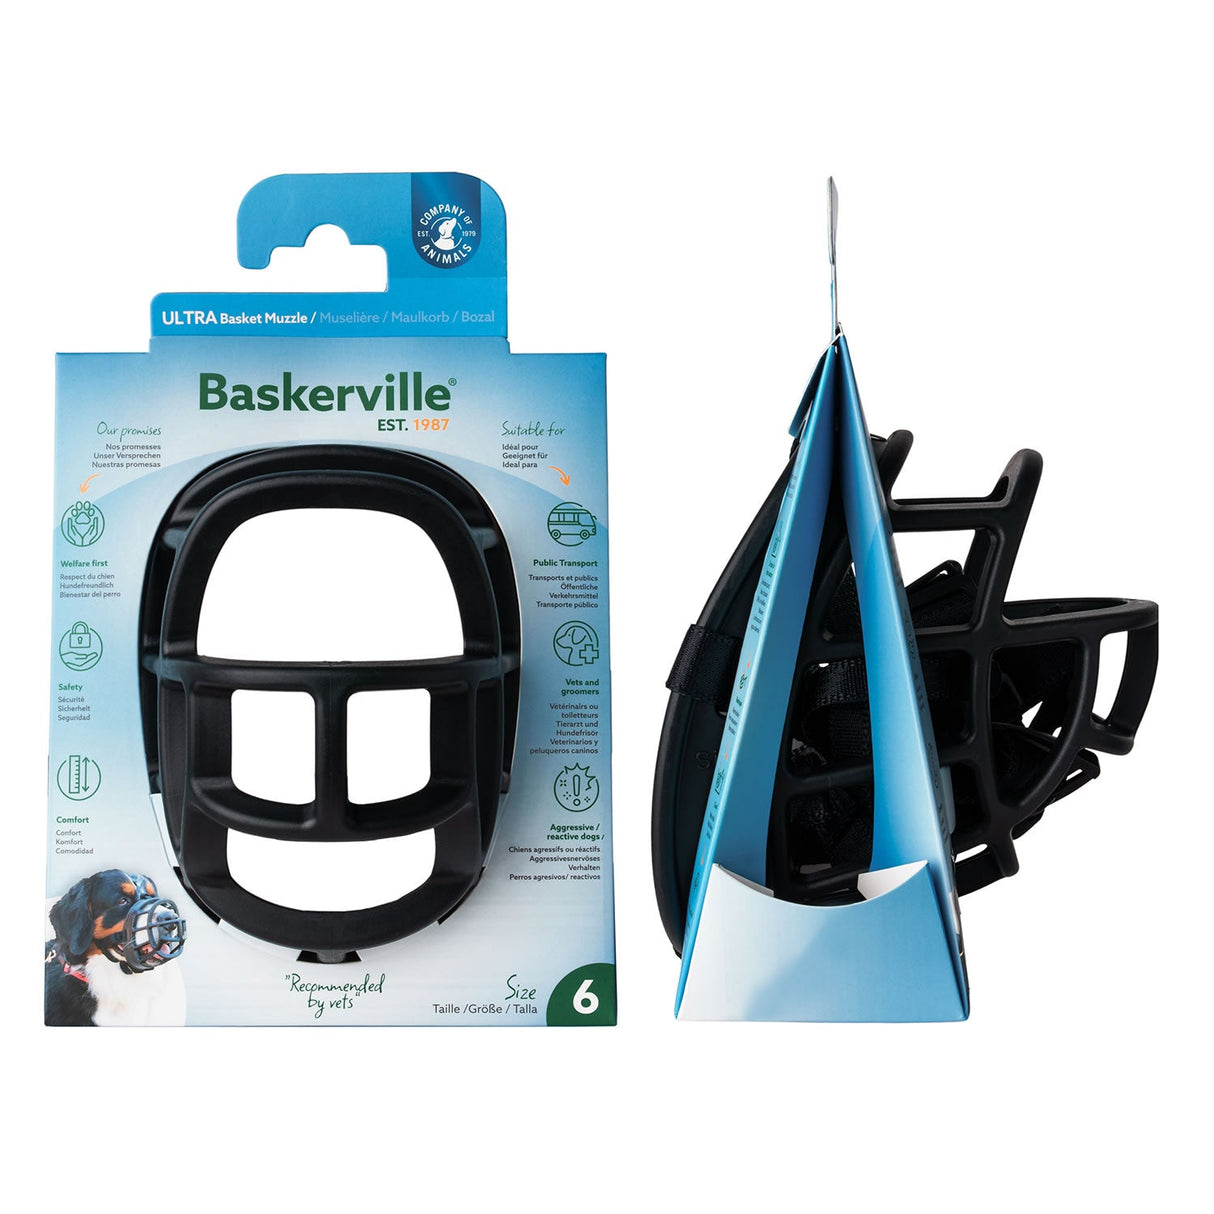 Baskerville Ultra Basket Muzzle  Pet Muzzles